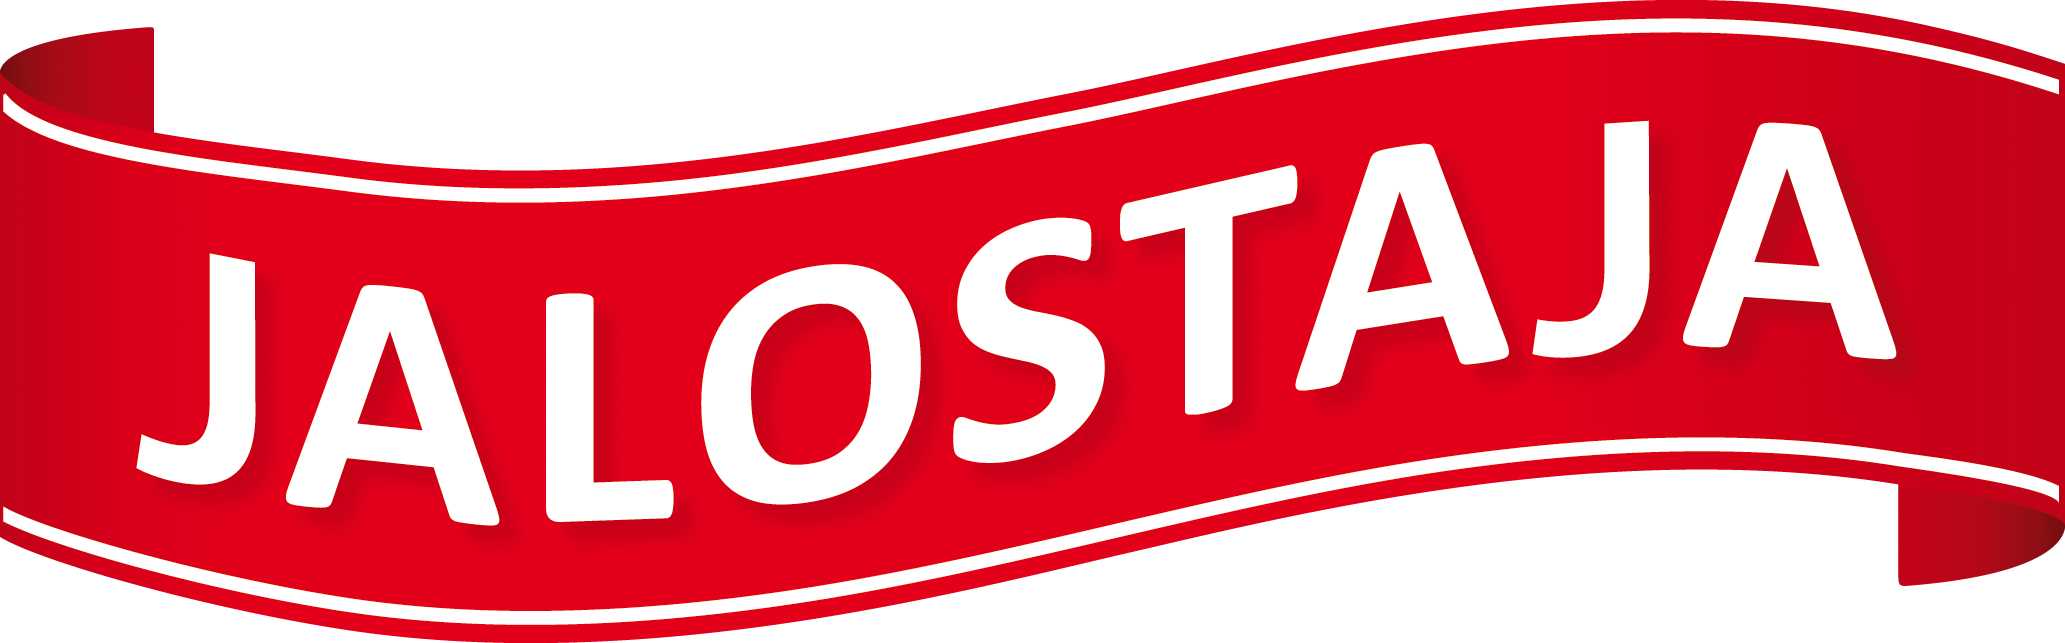 Jalostaja logo